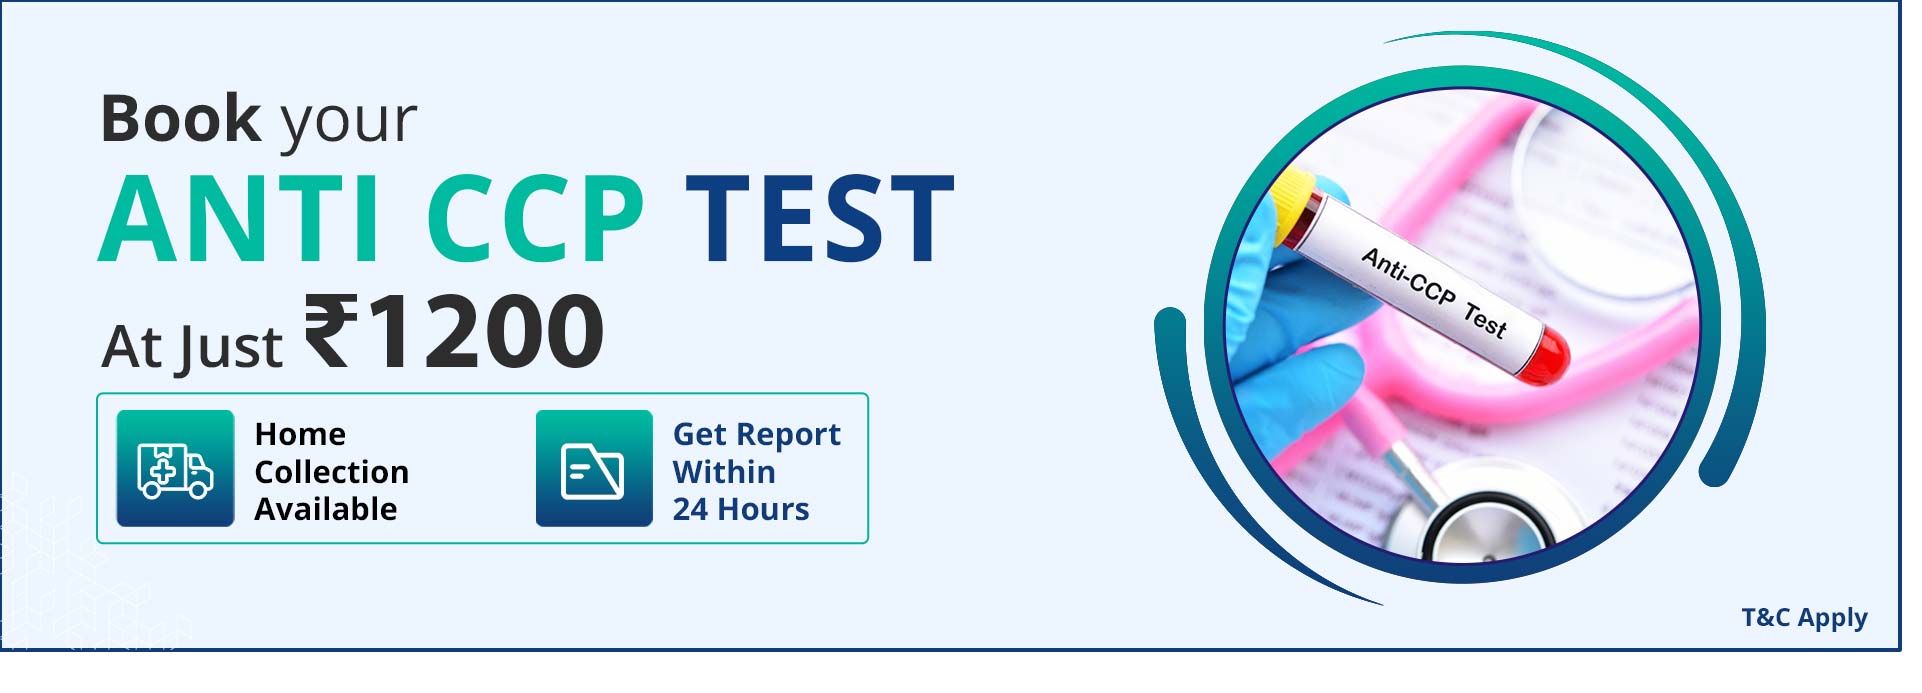 Anti ccp test